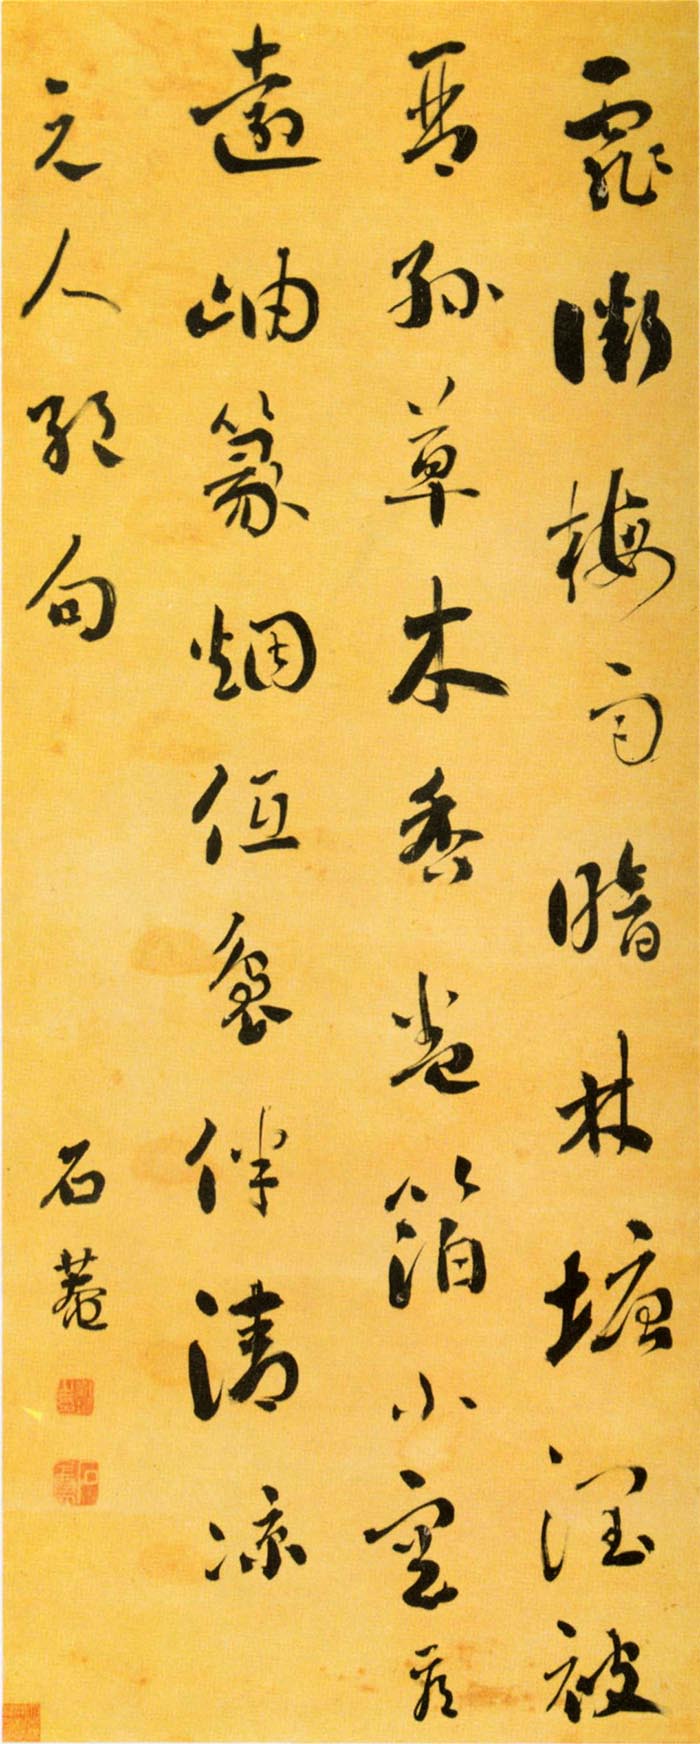 刘墉《行草书元人绝句》-四川省博物馆藏(图1)